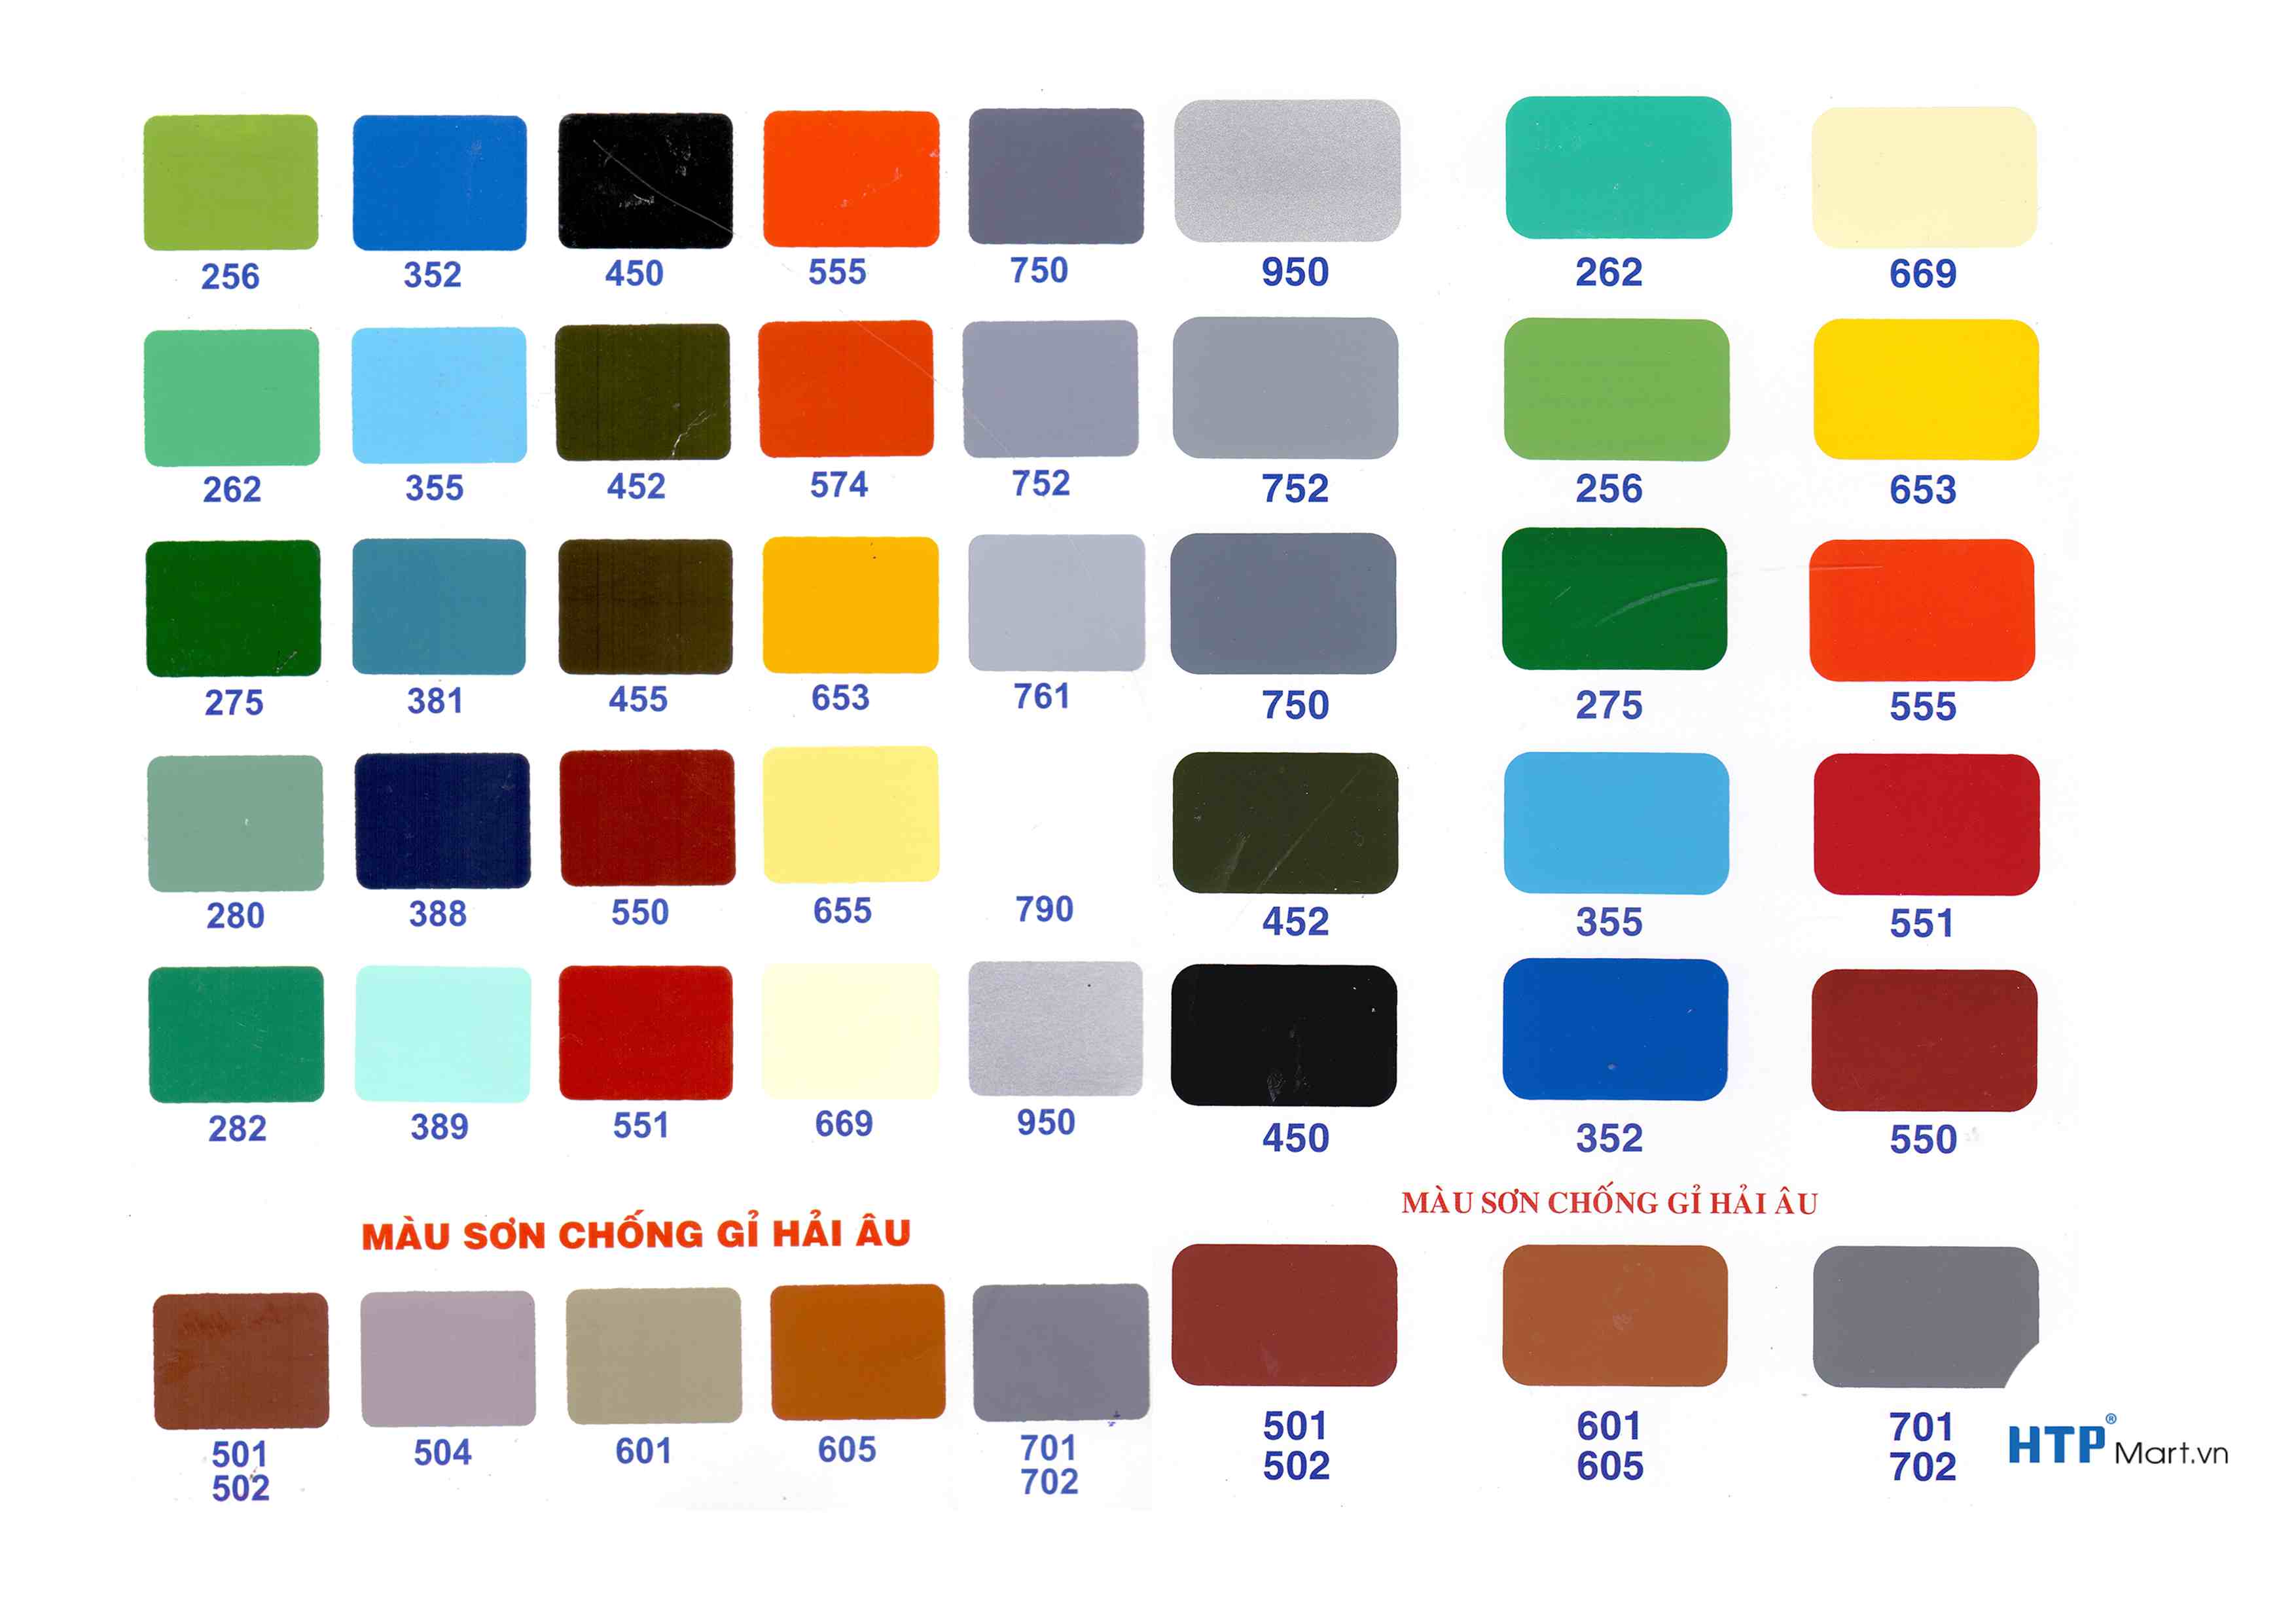 Bảng màu sơn phủ hải âu 2 với nhiều lựa chọn màu sắc và tính năng độc đáo sẽ làm hài lòng cả những khách hàng khó tính nhất. Hãy xem hình để tìm kiếm lựa chọn phù hợp với mình.